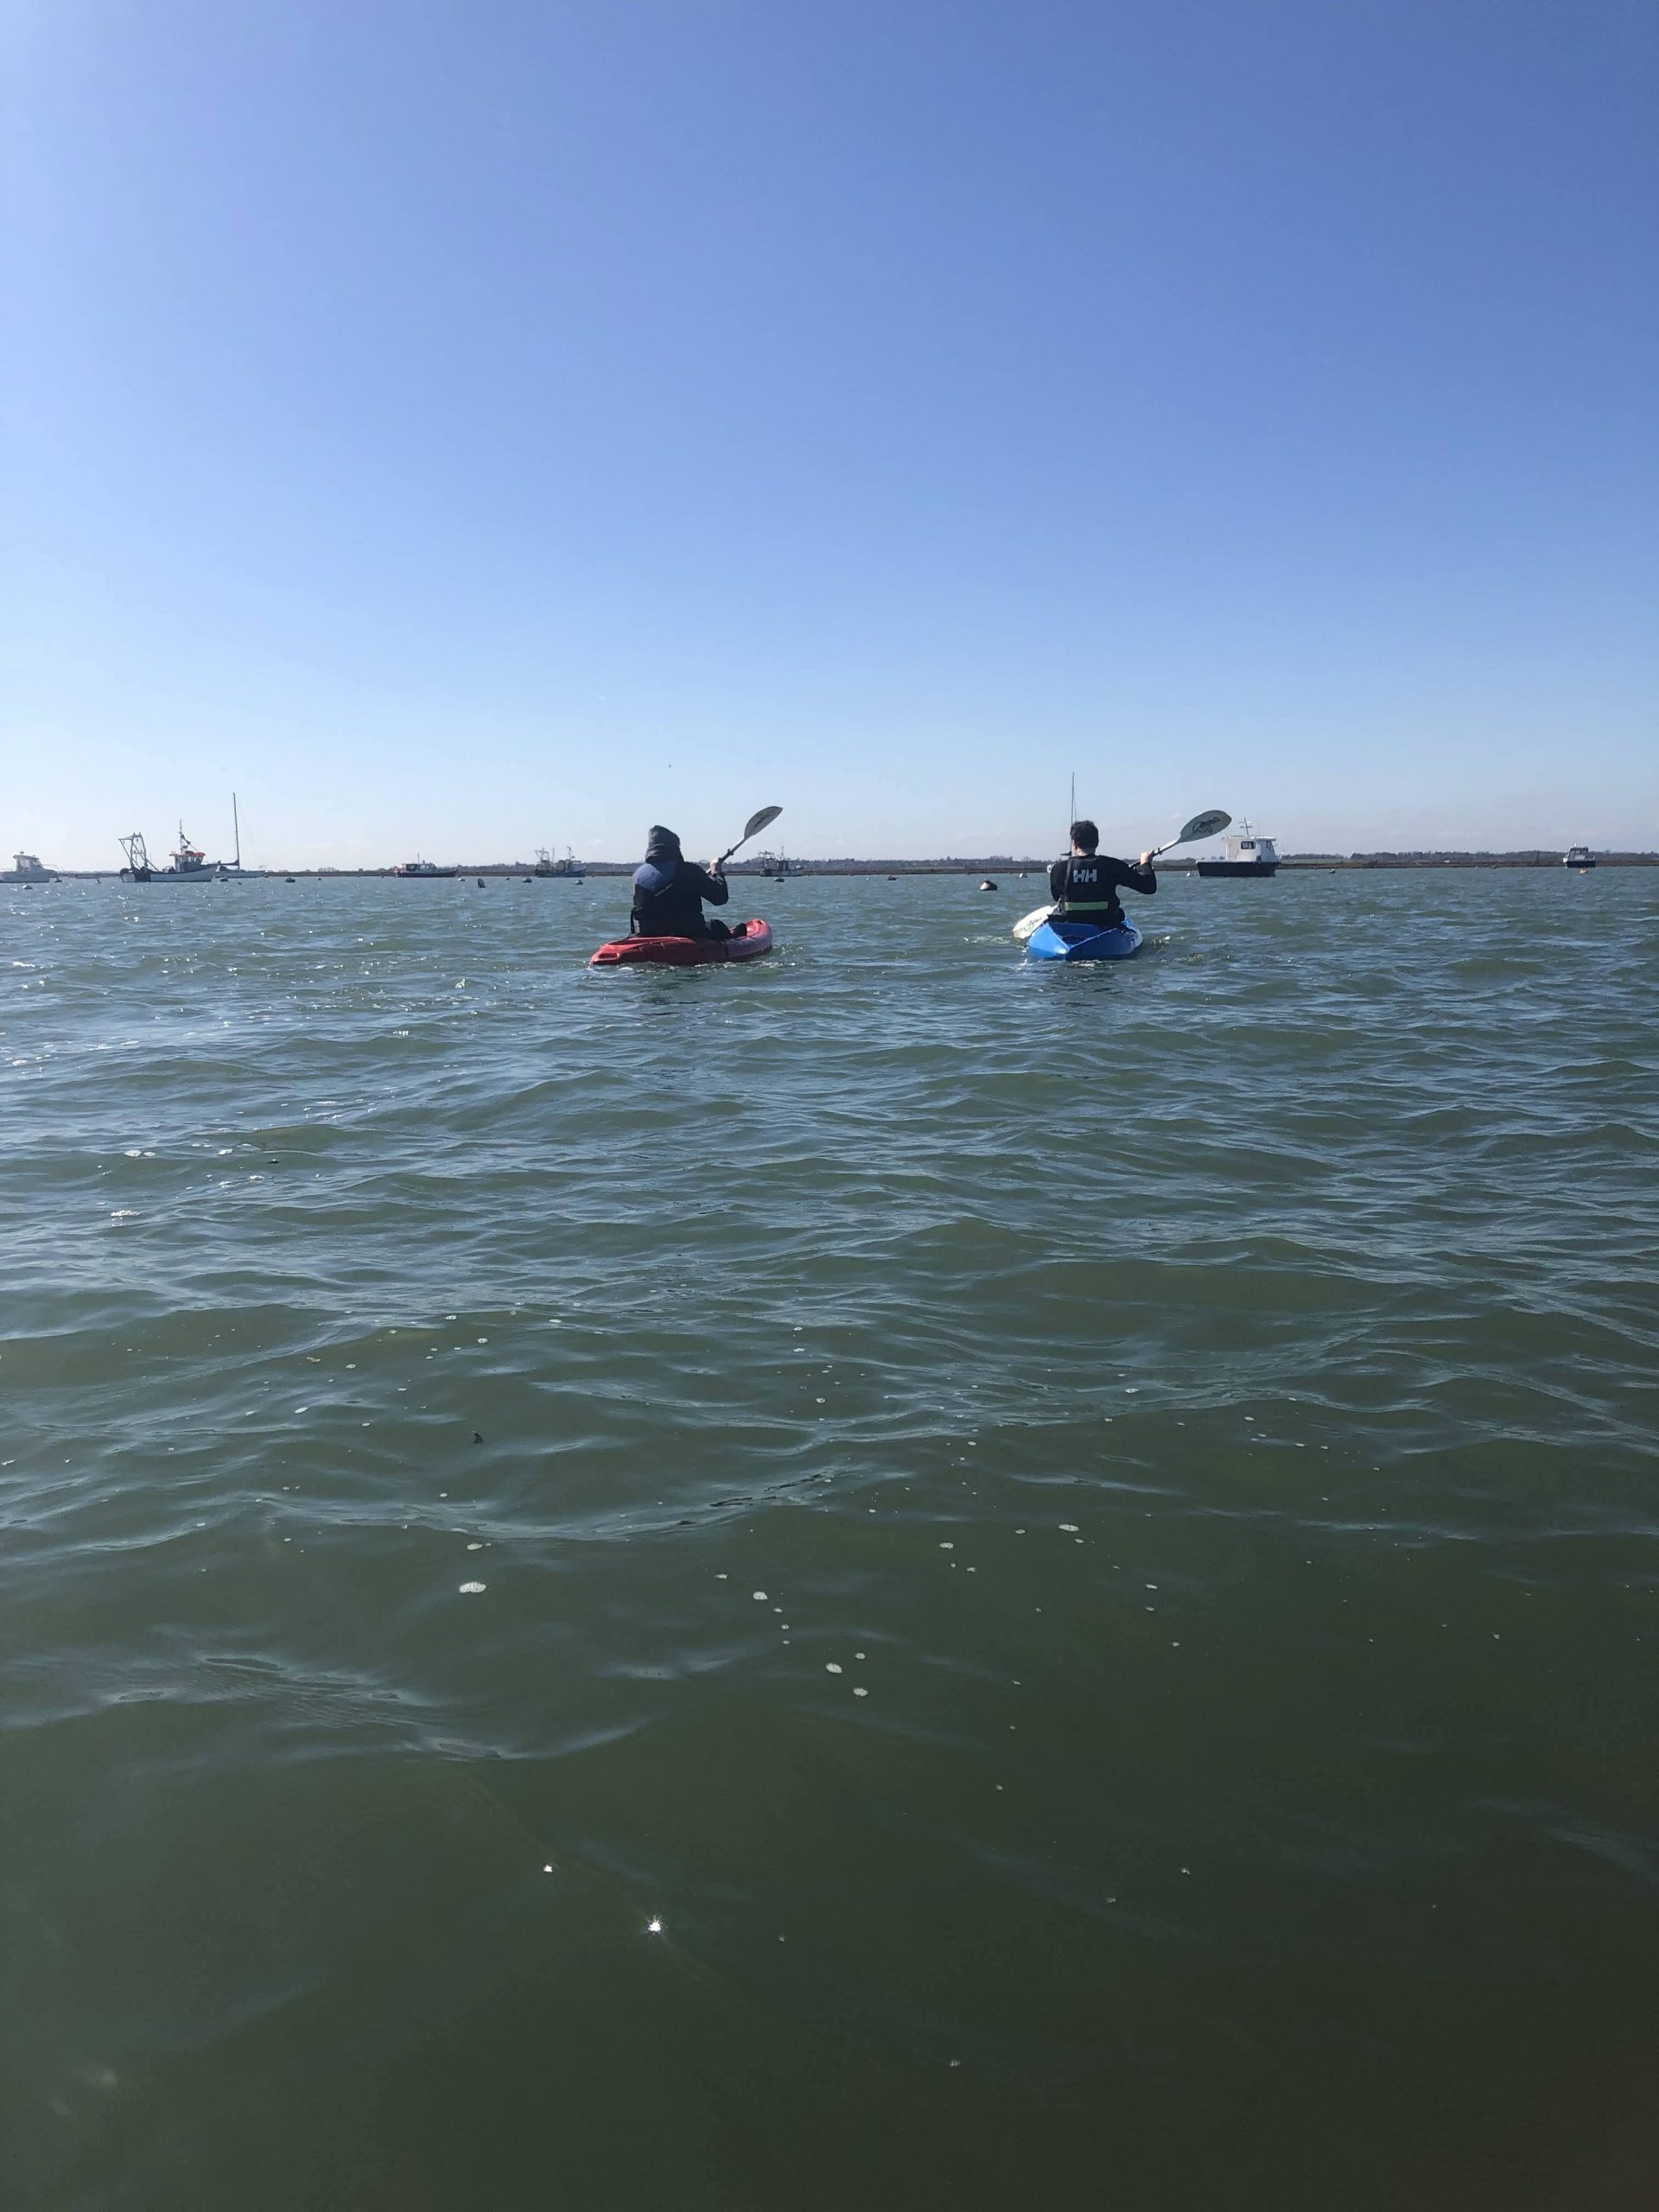 G kayaking in open water Essex